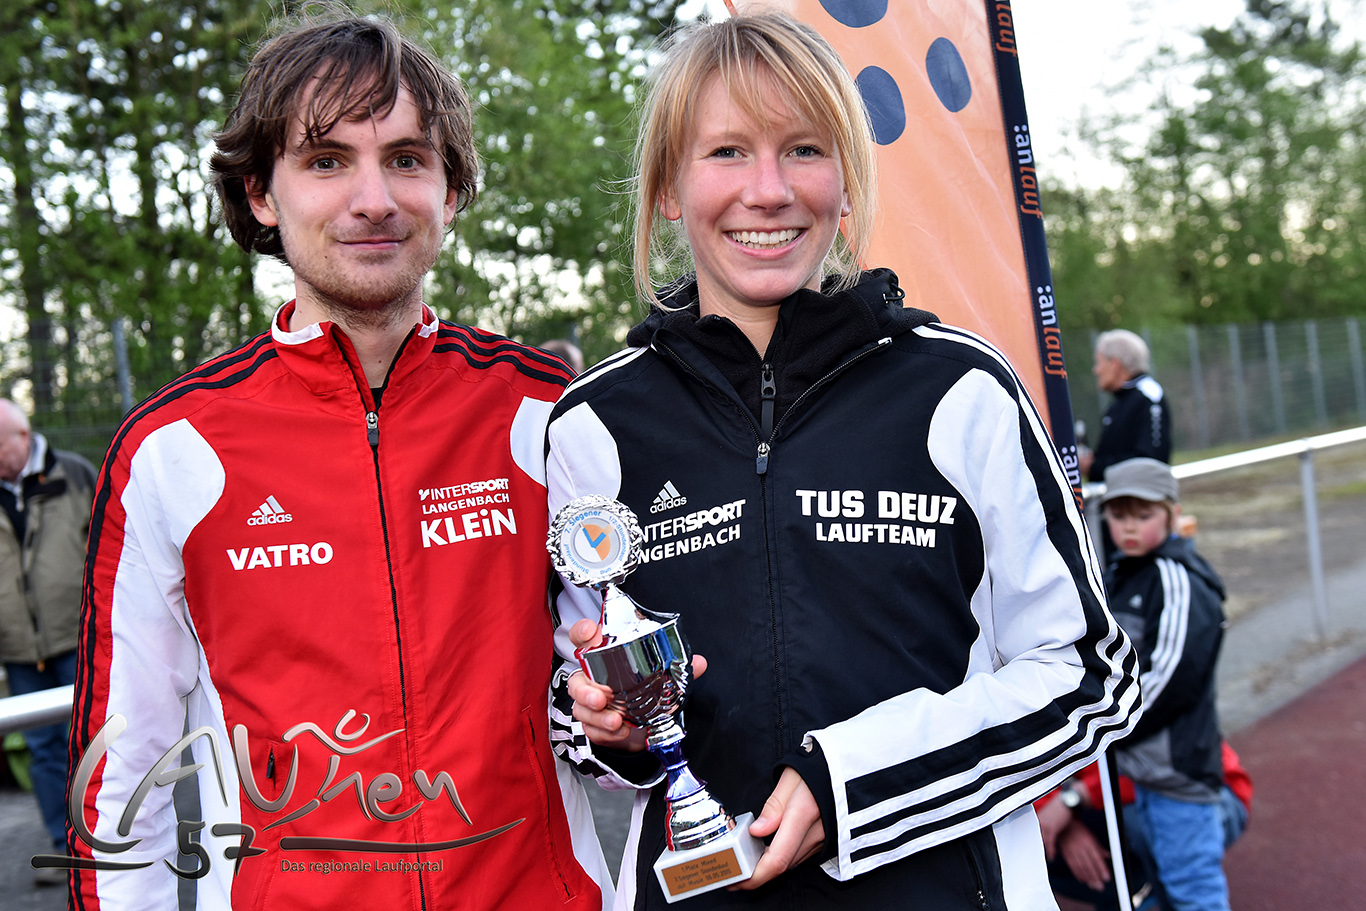 Rebekka Otterbau und Manuel Wörmann gewannen die Mixedwertung mit 17.100 Metern.